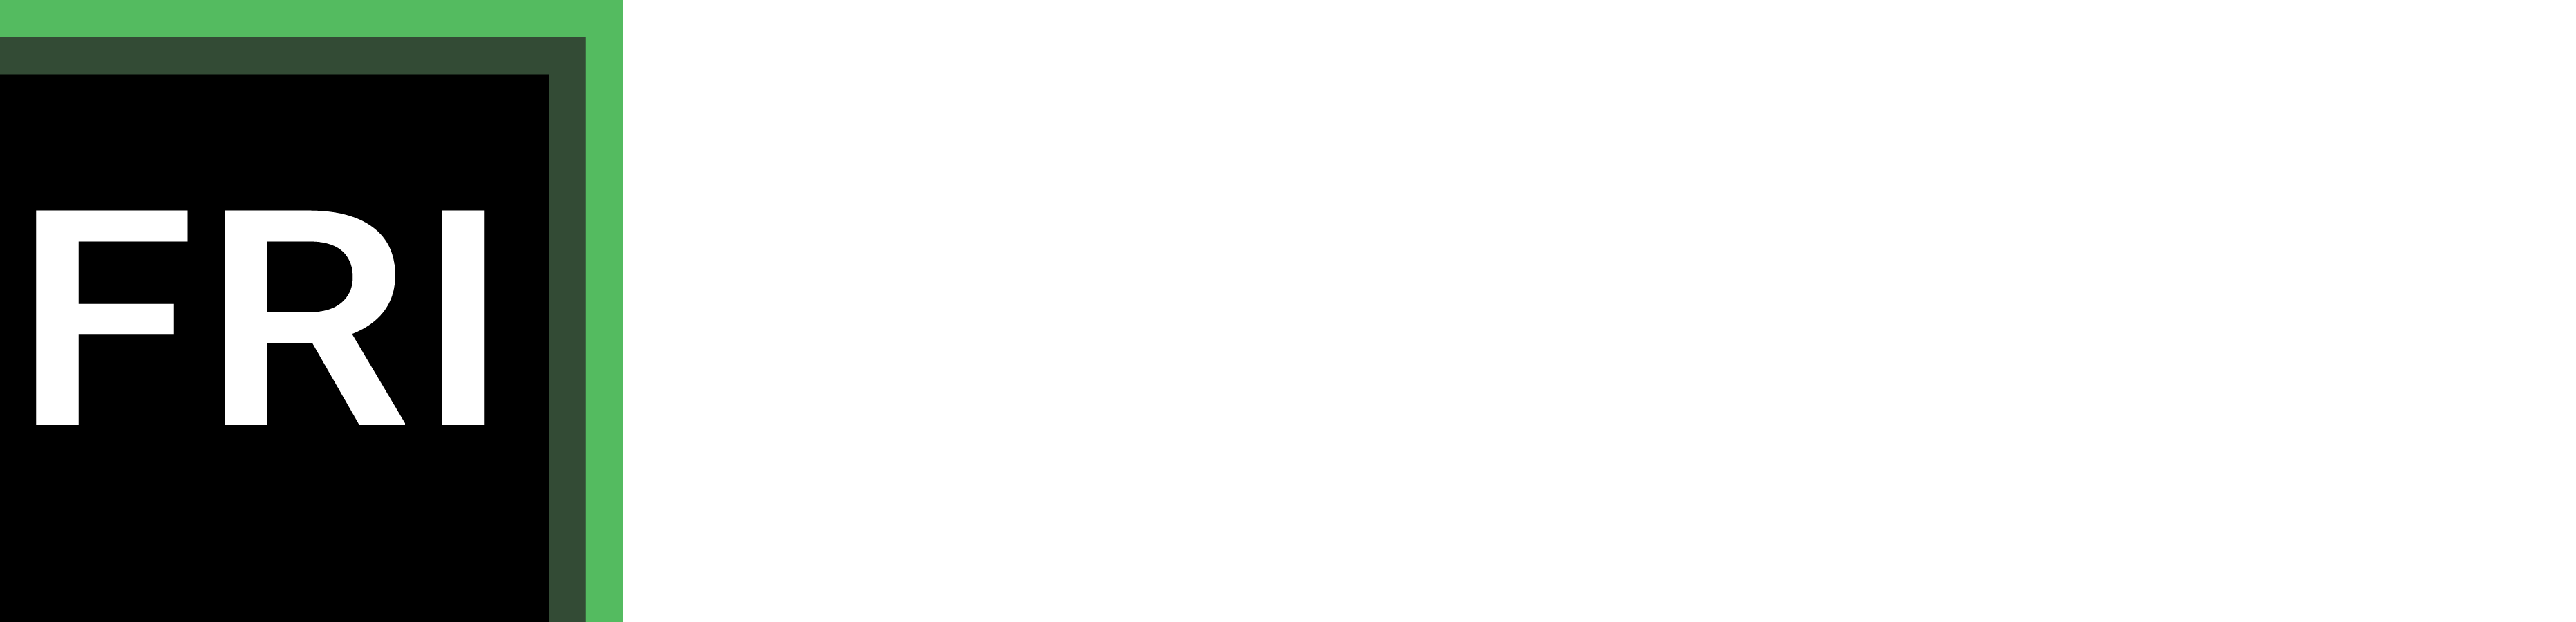 Frontline Resource Institute